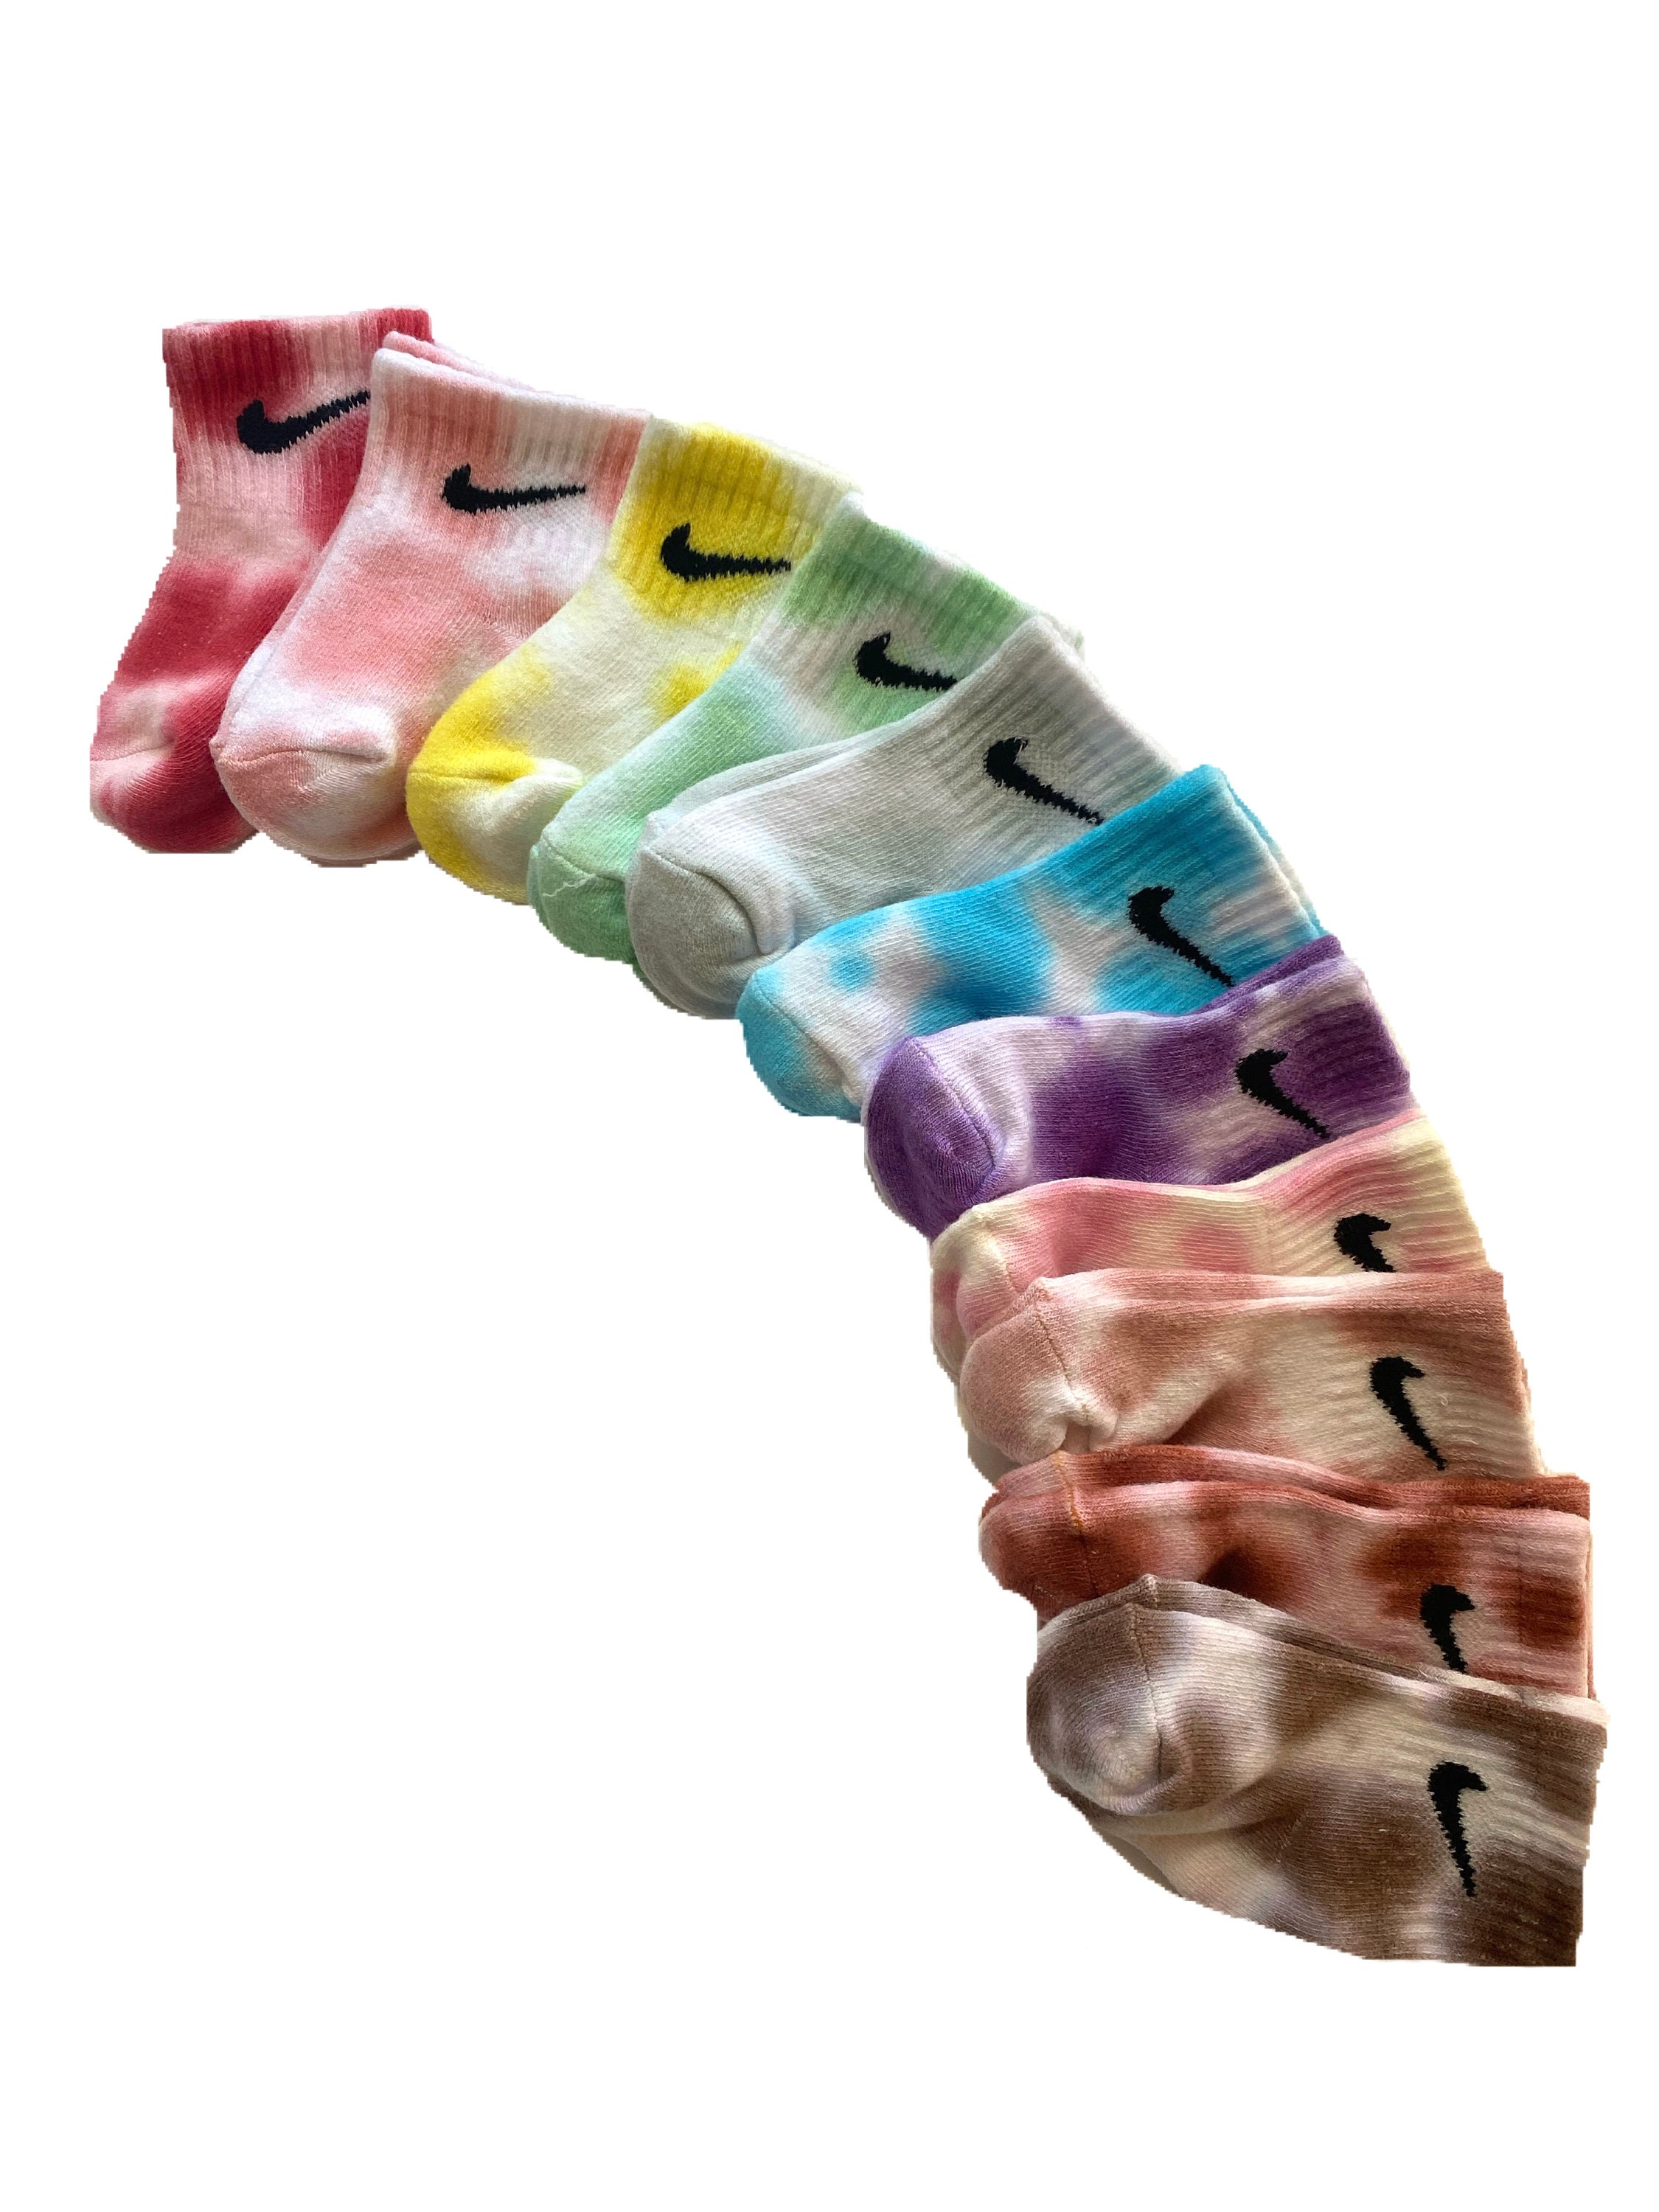 Tie Dye Baby Nike Socks Infant Toddler Quarter/ankle Socks Hand Dyed Socks  Tie Dye Socks Neutral Color Socks Baby Socks Unisex 